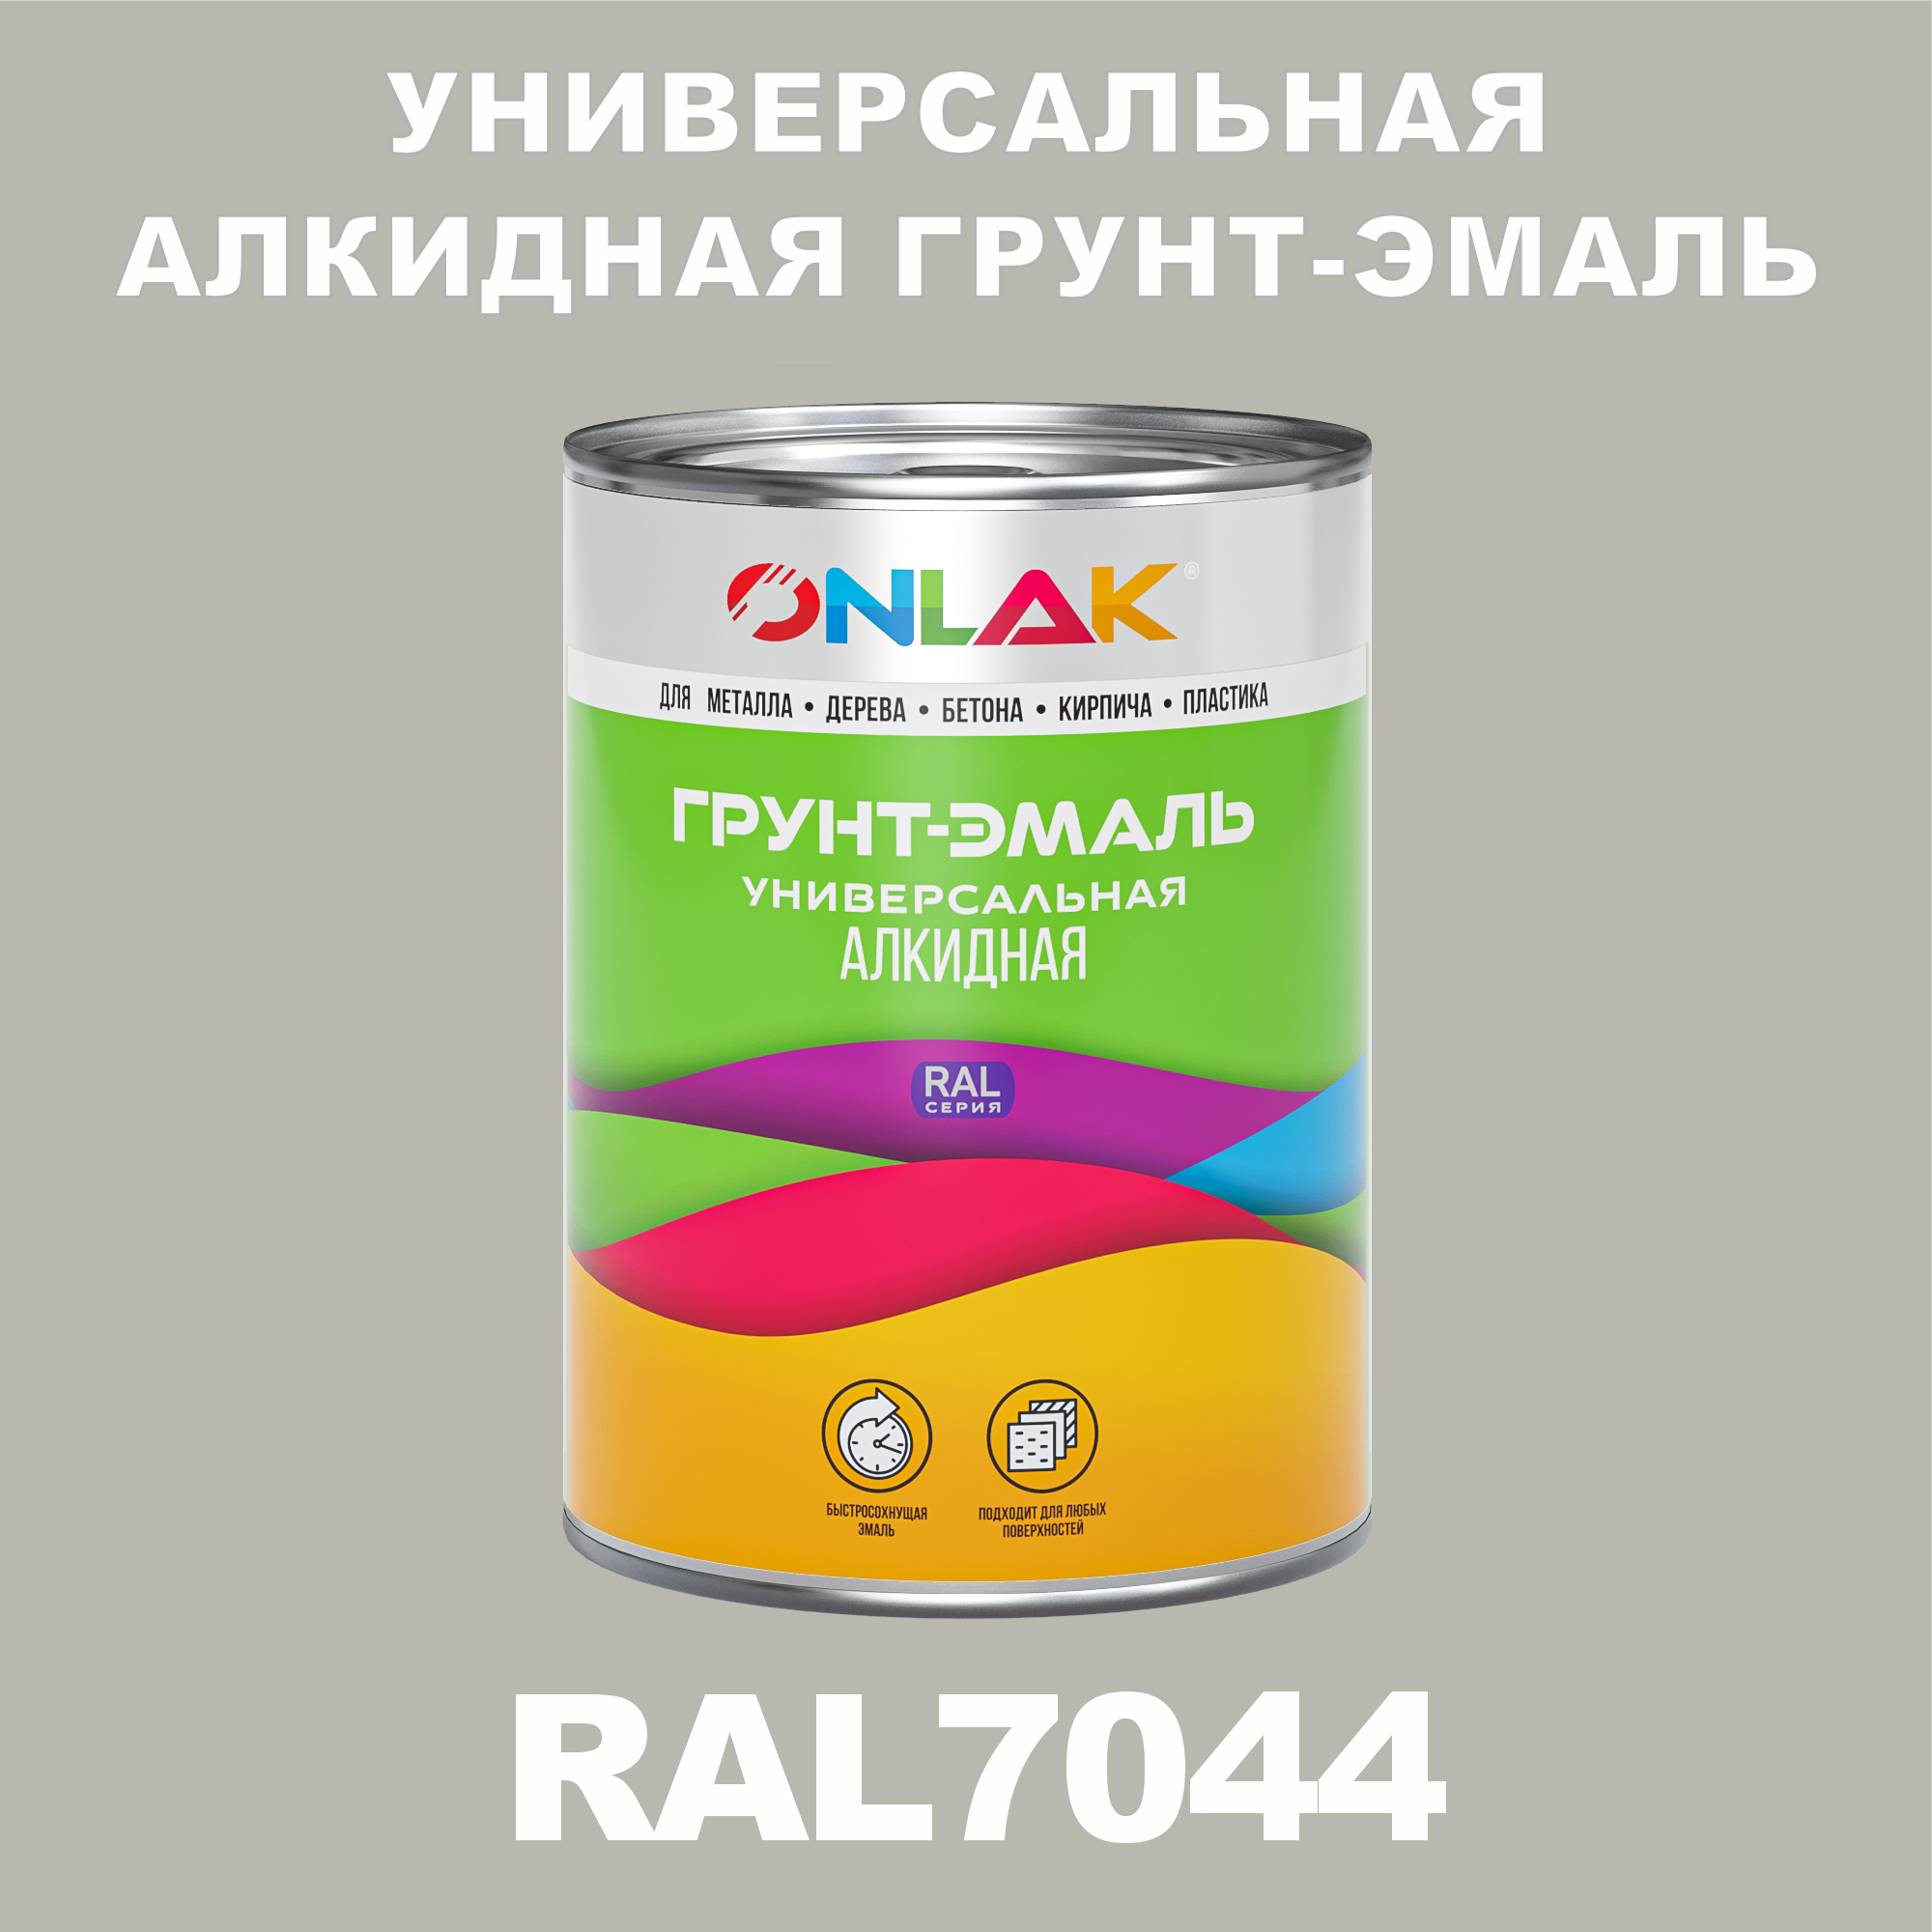 Грунт-эмаль ONLAK 1К RAL7044 антикоррозионная алкидная по металлу по ржавчине 1 кг грунт эмаль skladno по ржавчине алкидная желтая 1 8 кг